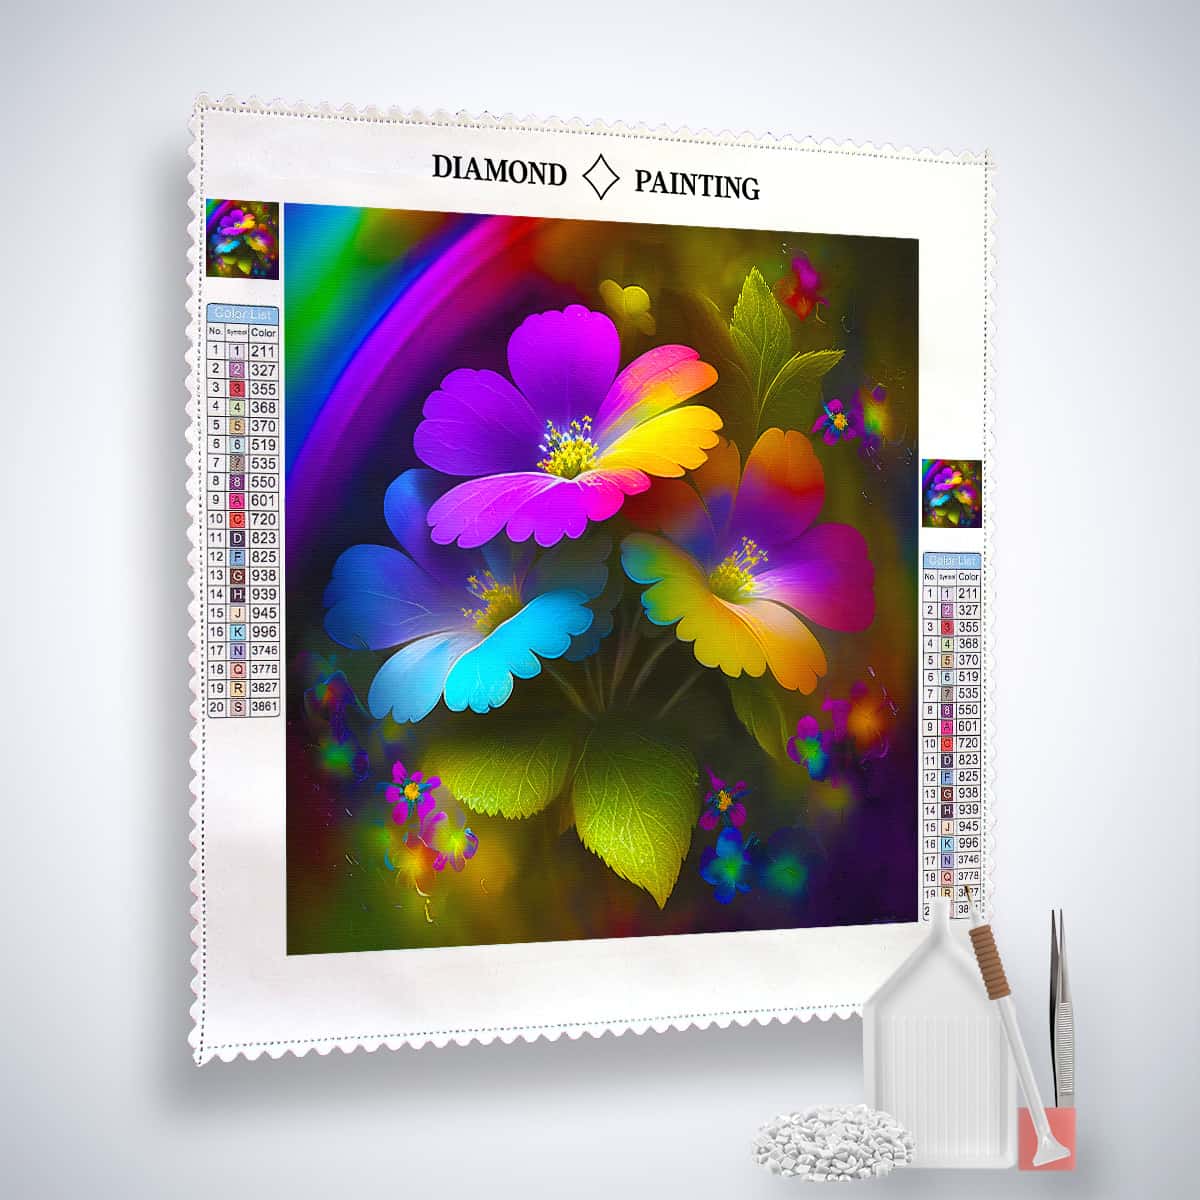 AB Diamond Painting - Zauberblumen Frontal - gedruckt in Ultra-HD - AB Diamond, Blumen, Neu eingetroffen, Quadratisch